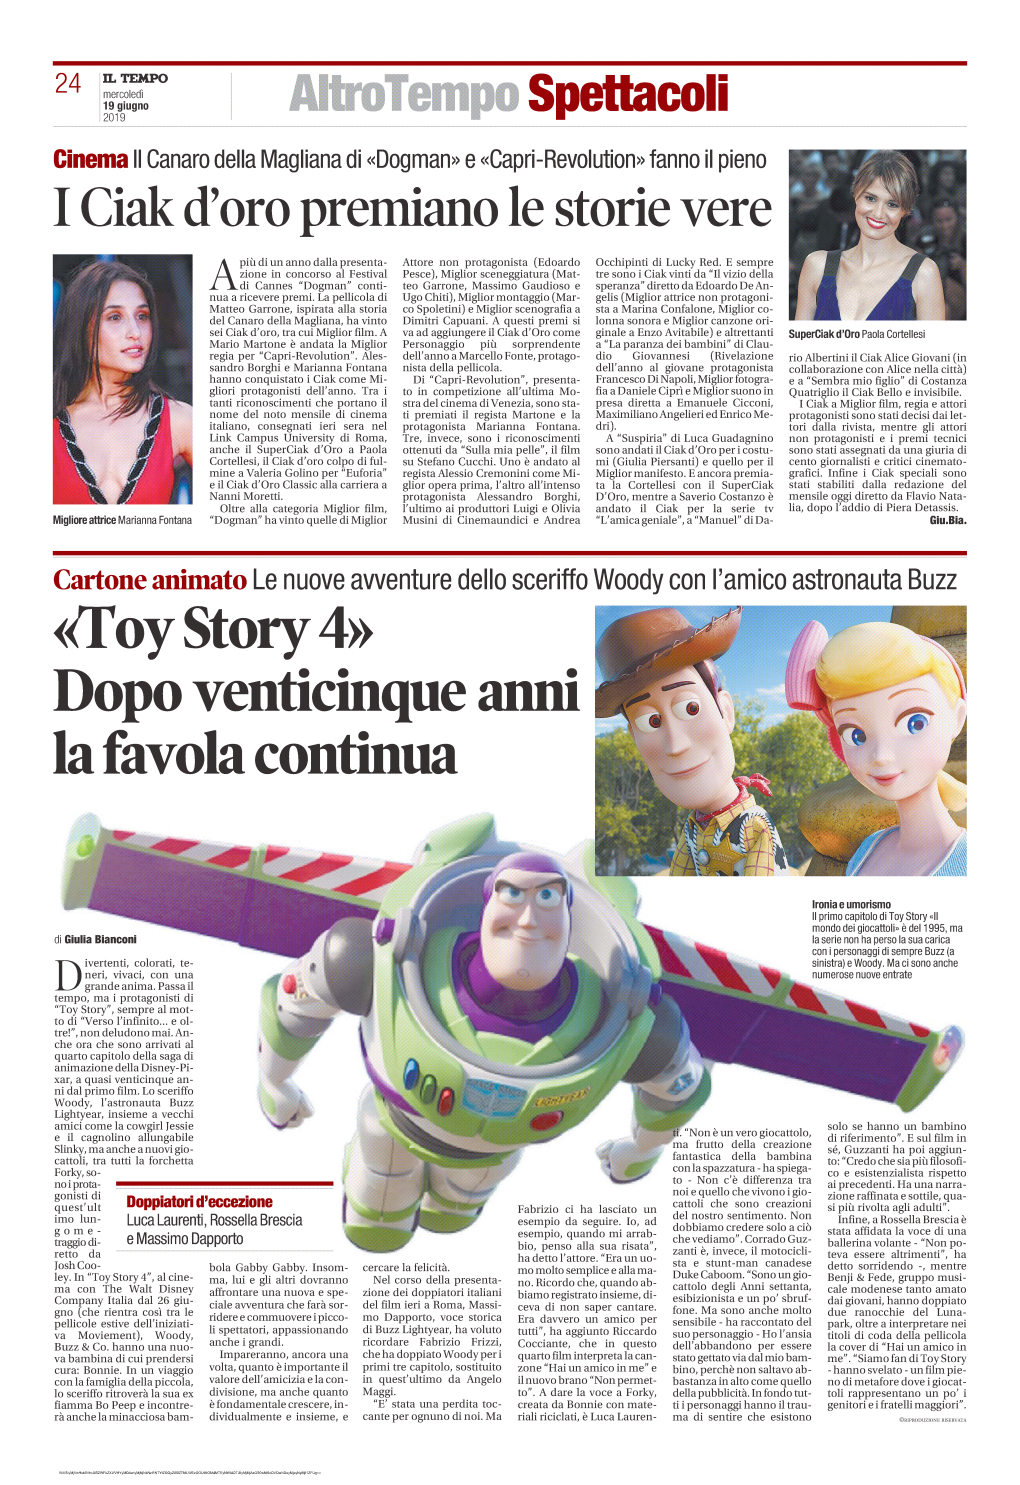 Toy Story 4» Dopo Venticinque Anni La Favola Continua